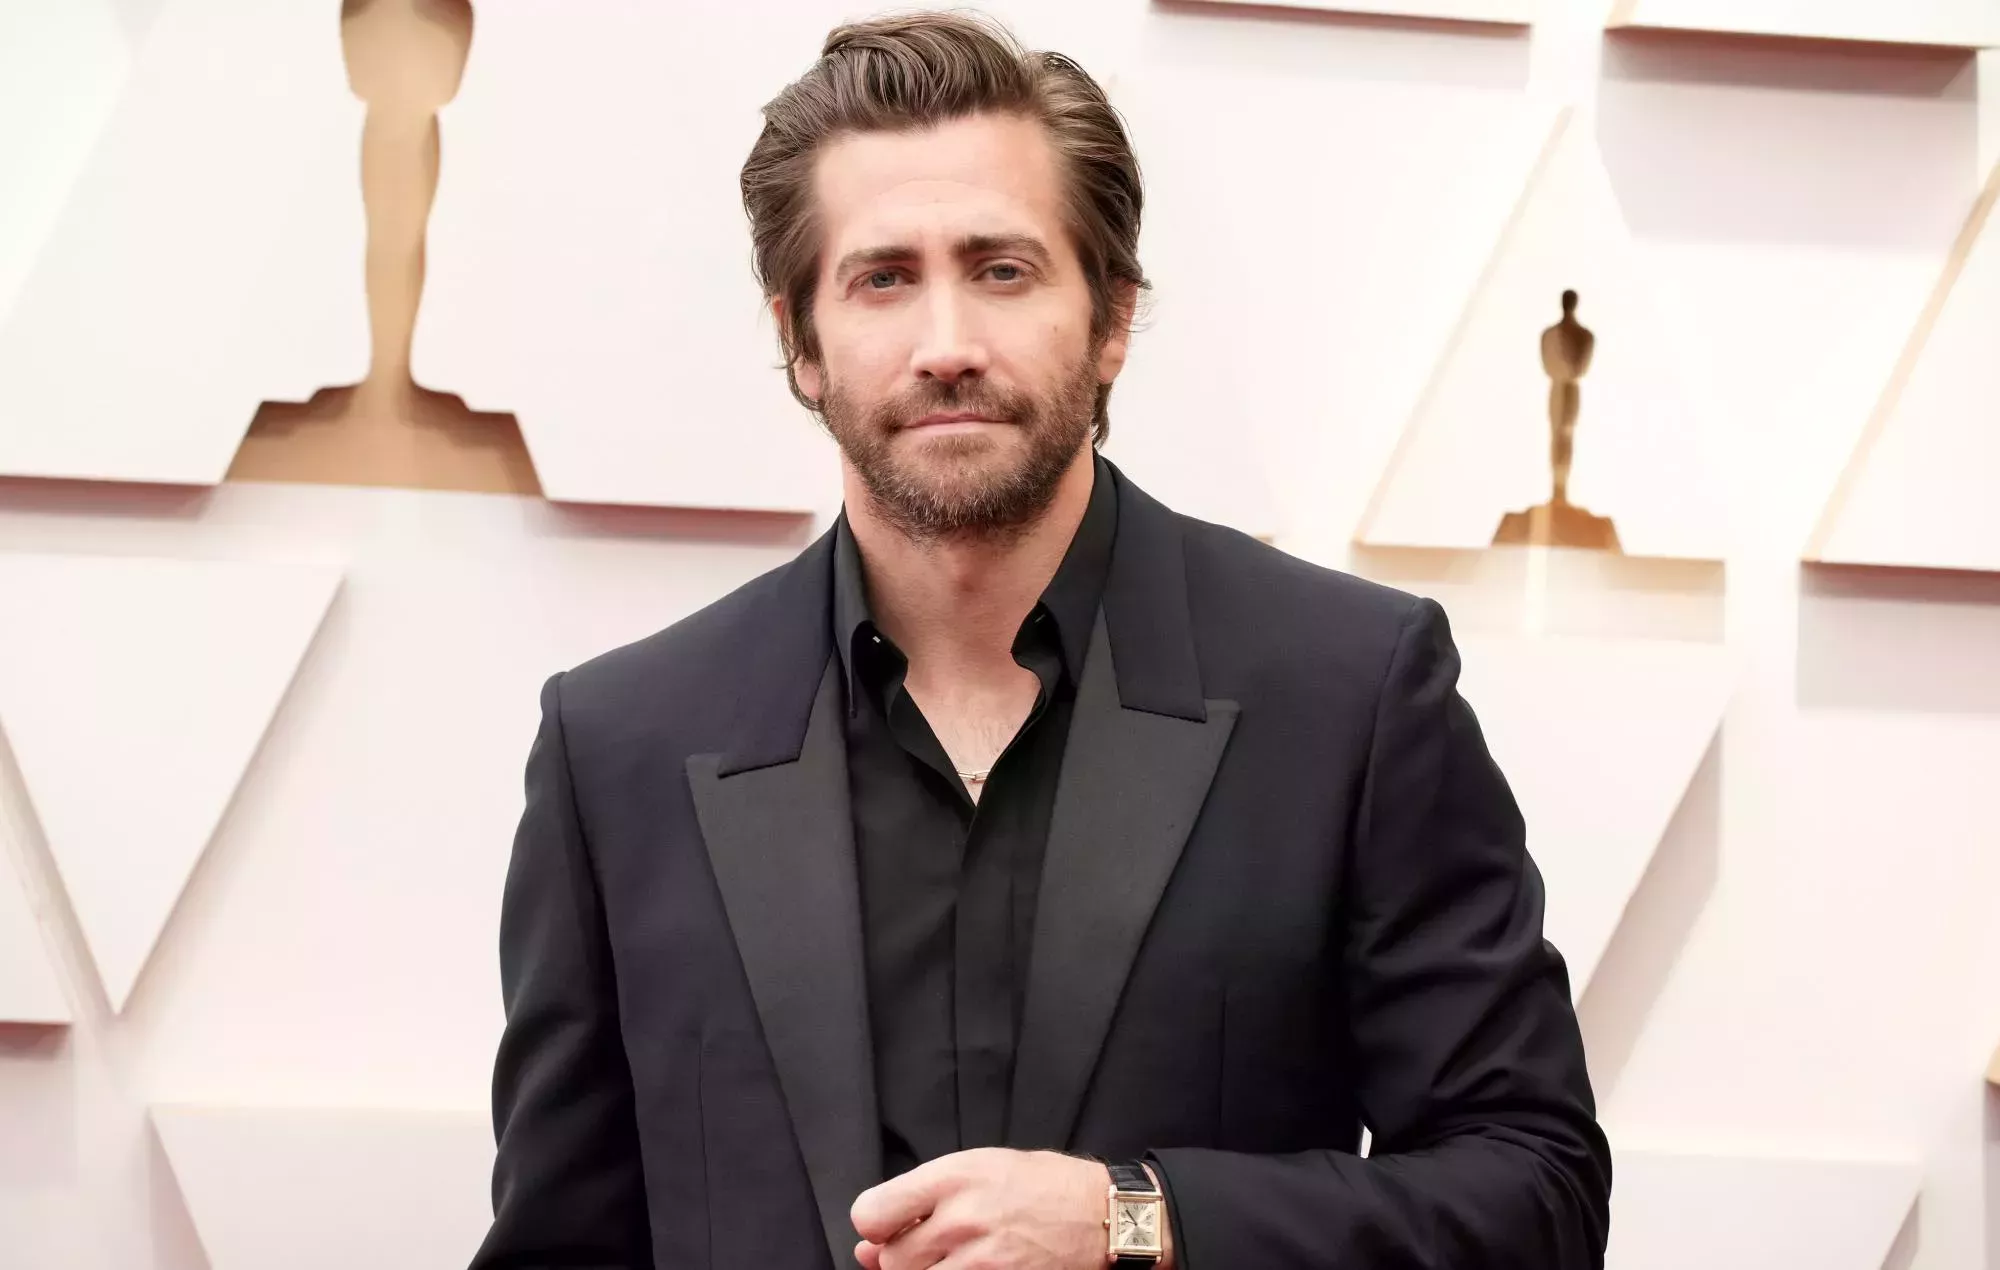 Las extrañas exigencias de Jake Gyllenhaal provocaron el fracaso de la película, según su director